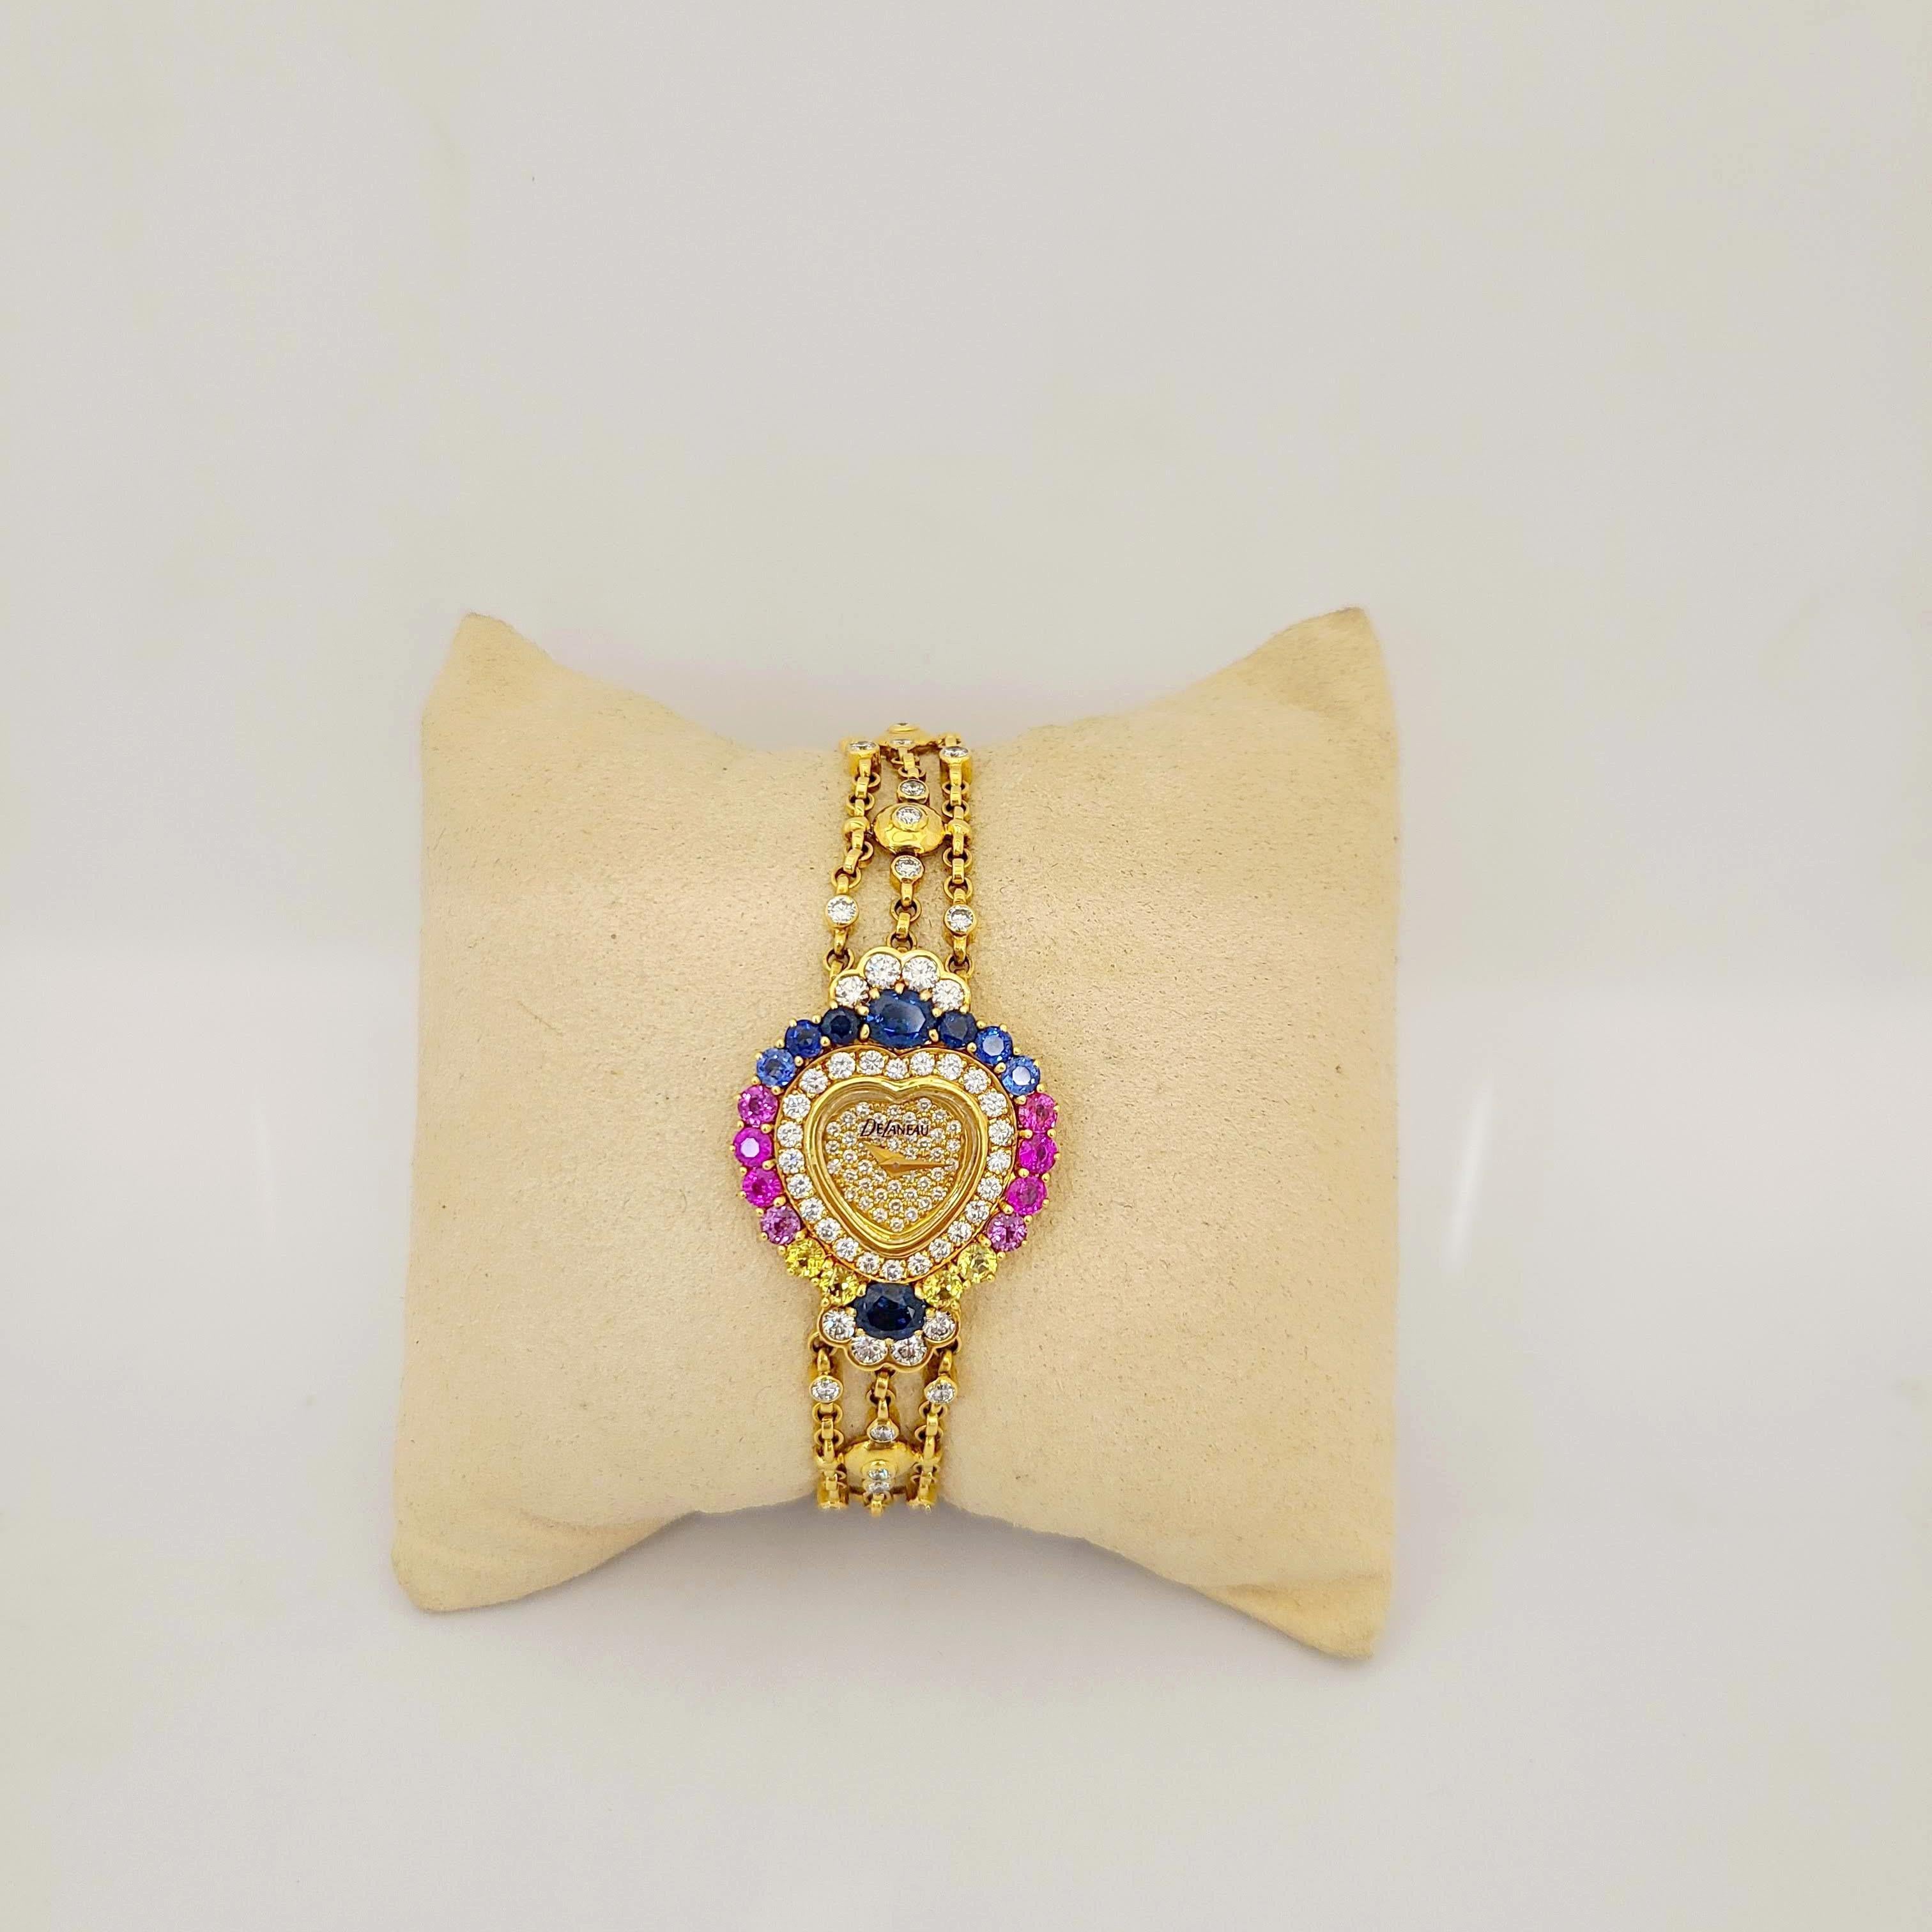 DeLaneau wurde 1949 von einer Frau in der Schweiz gegründet.  Sie sind eine der ersten Uhrenfirmen, die ihre gesamte Kollektion den Damenuhren widmen.
Das Zifferblatt dieser herzförmigen Uhr aus 18 Karat Gelbgold ist mit Diamanten in Pflasterform